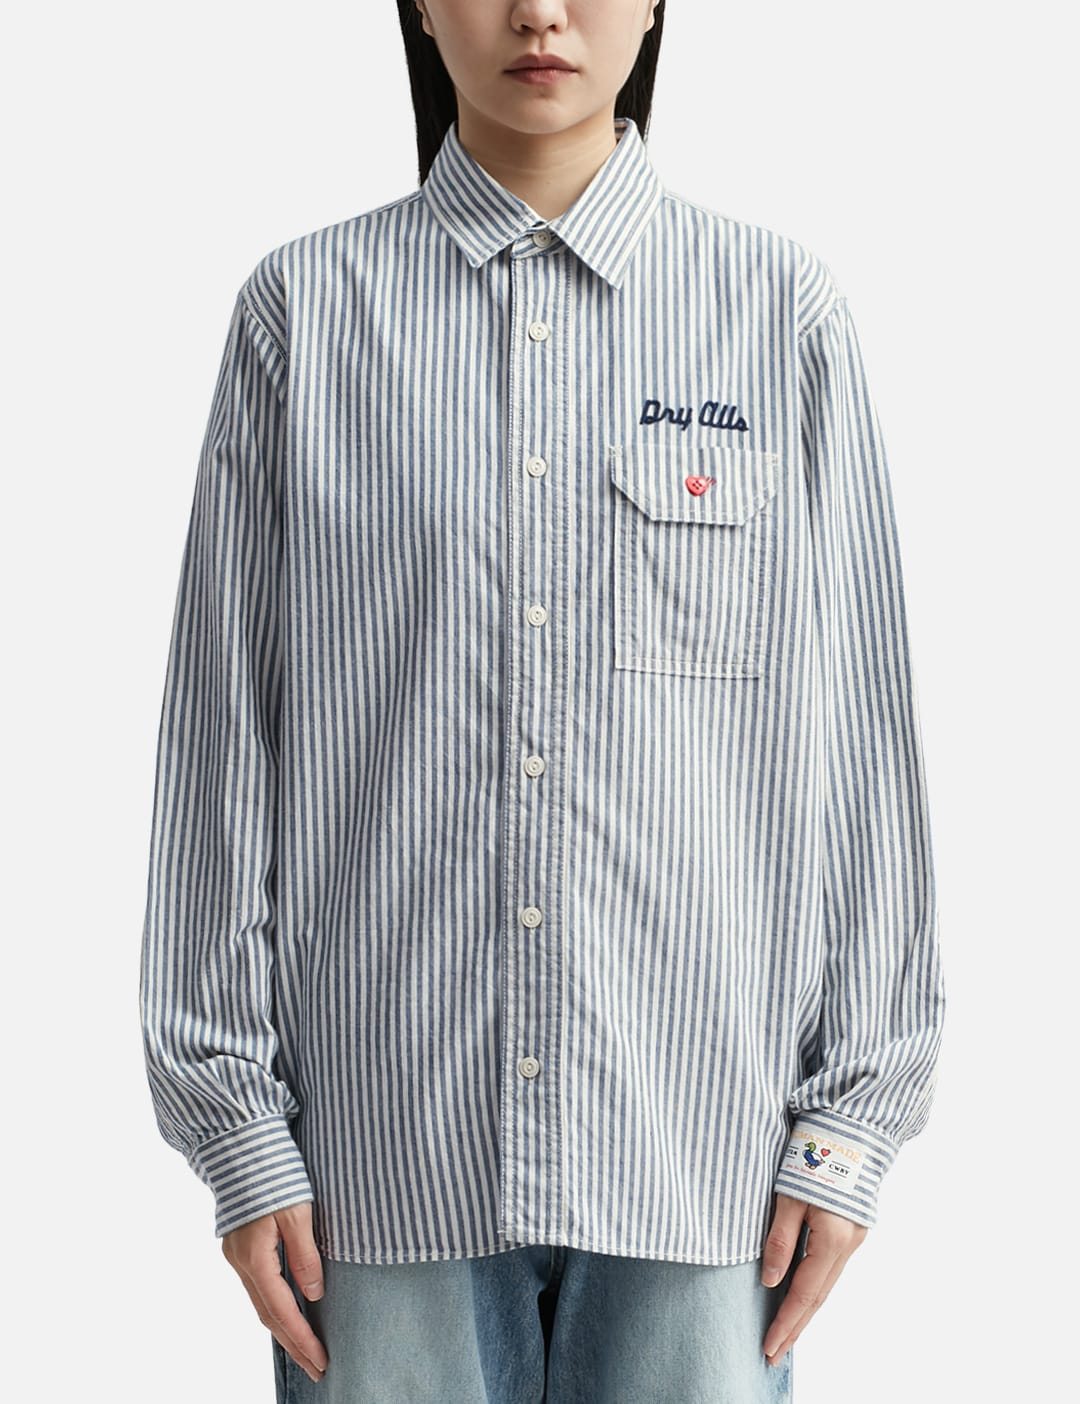 19,200円Human Made Striped Work Shirt L ワークシャツ